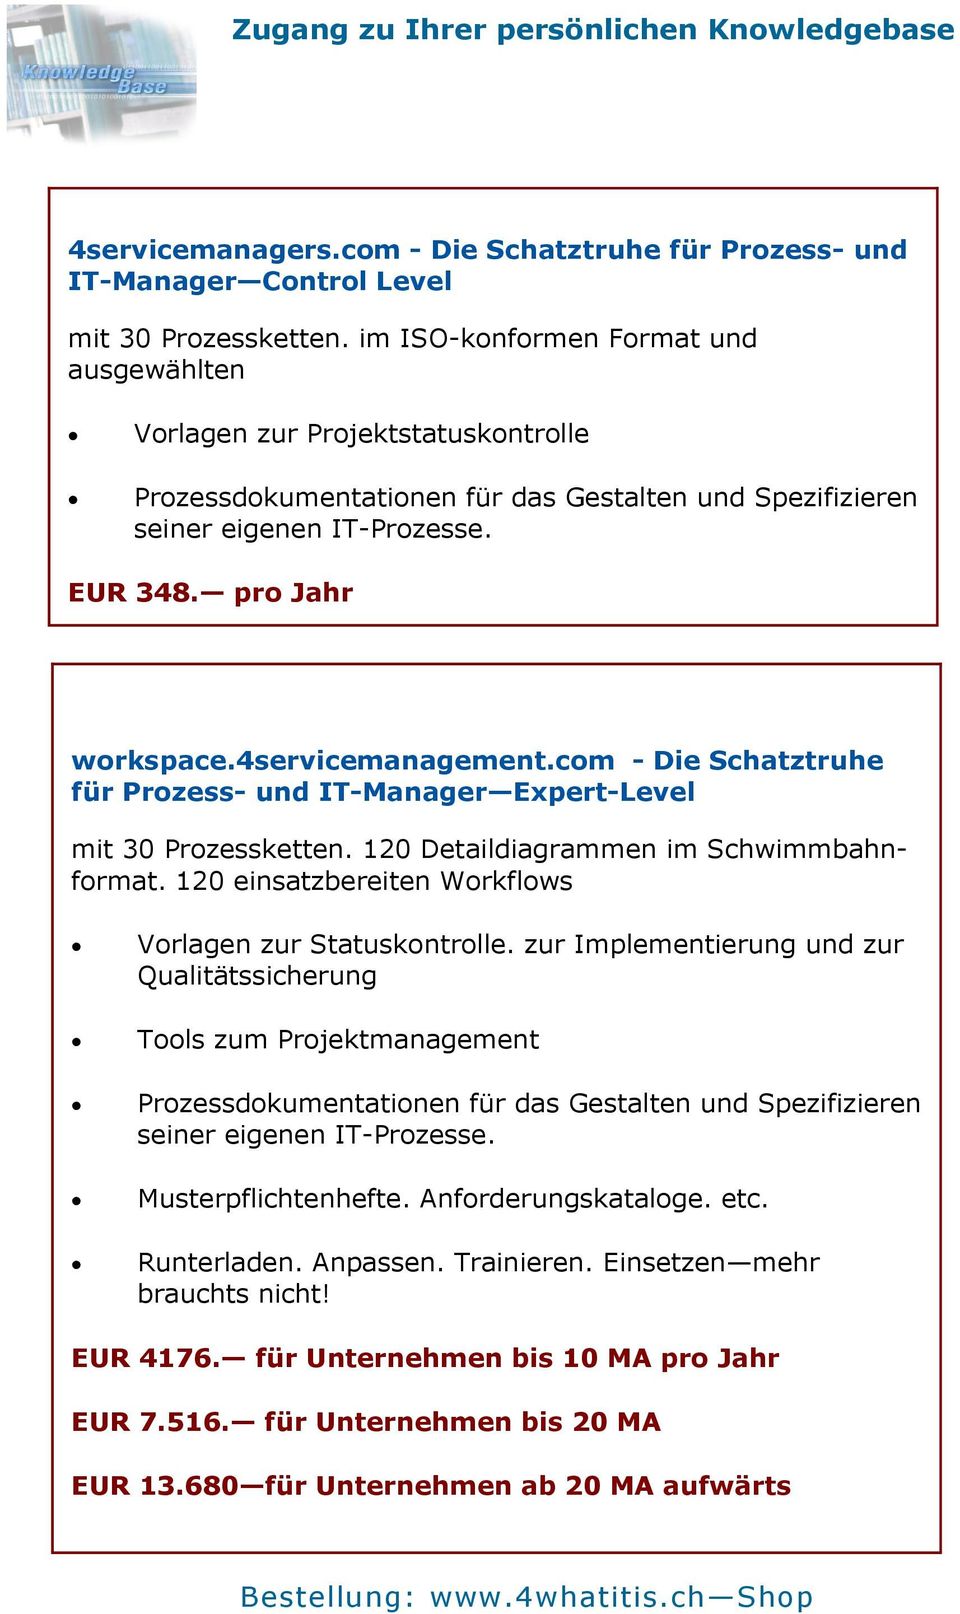 4servicemanagement.com - Die Schatztruhe für Prozess- und IT-Manager Expert-Level mit 30 Prozessketten. 120 Detaildiagrammen im Schwimmbahnformat.